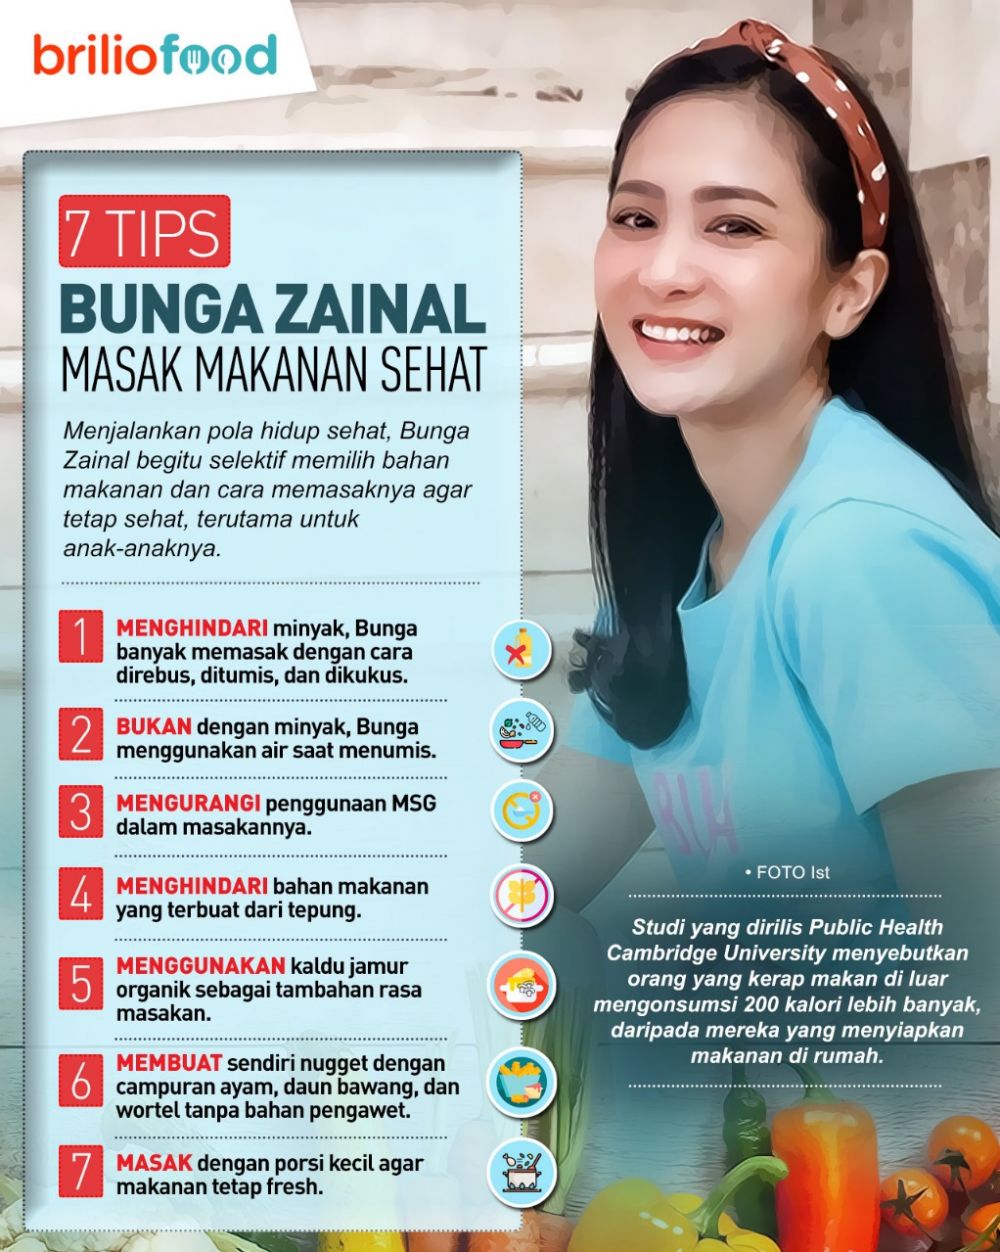 7 Cara Bunga Zainal masak makanan sehat, ganti minyak dengan air